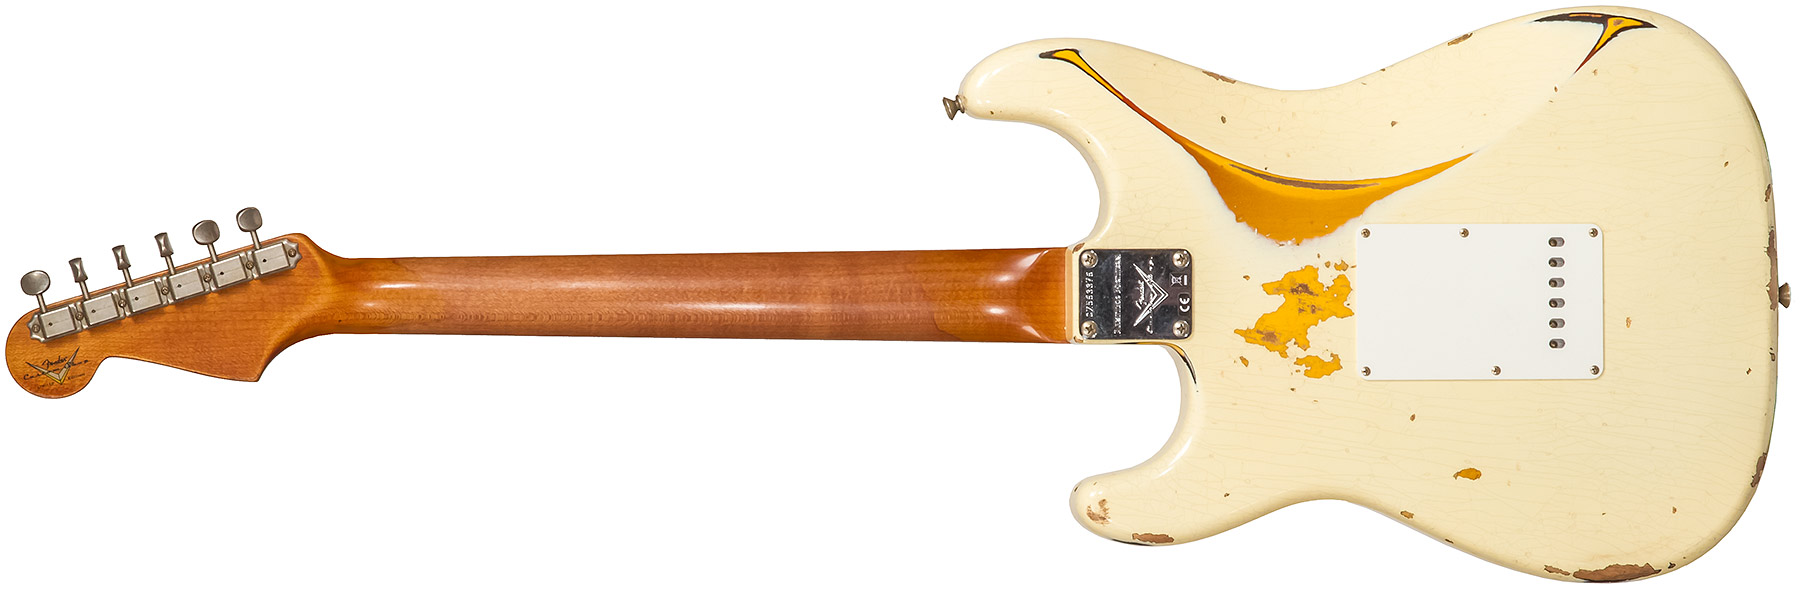 Fender Custom Shop Strat 1961 3s Trem Rw #cz563376 - Heavy Relic Vintage White/3-color Sunburst - Guitare Électrique Forme Str - Variation 1